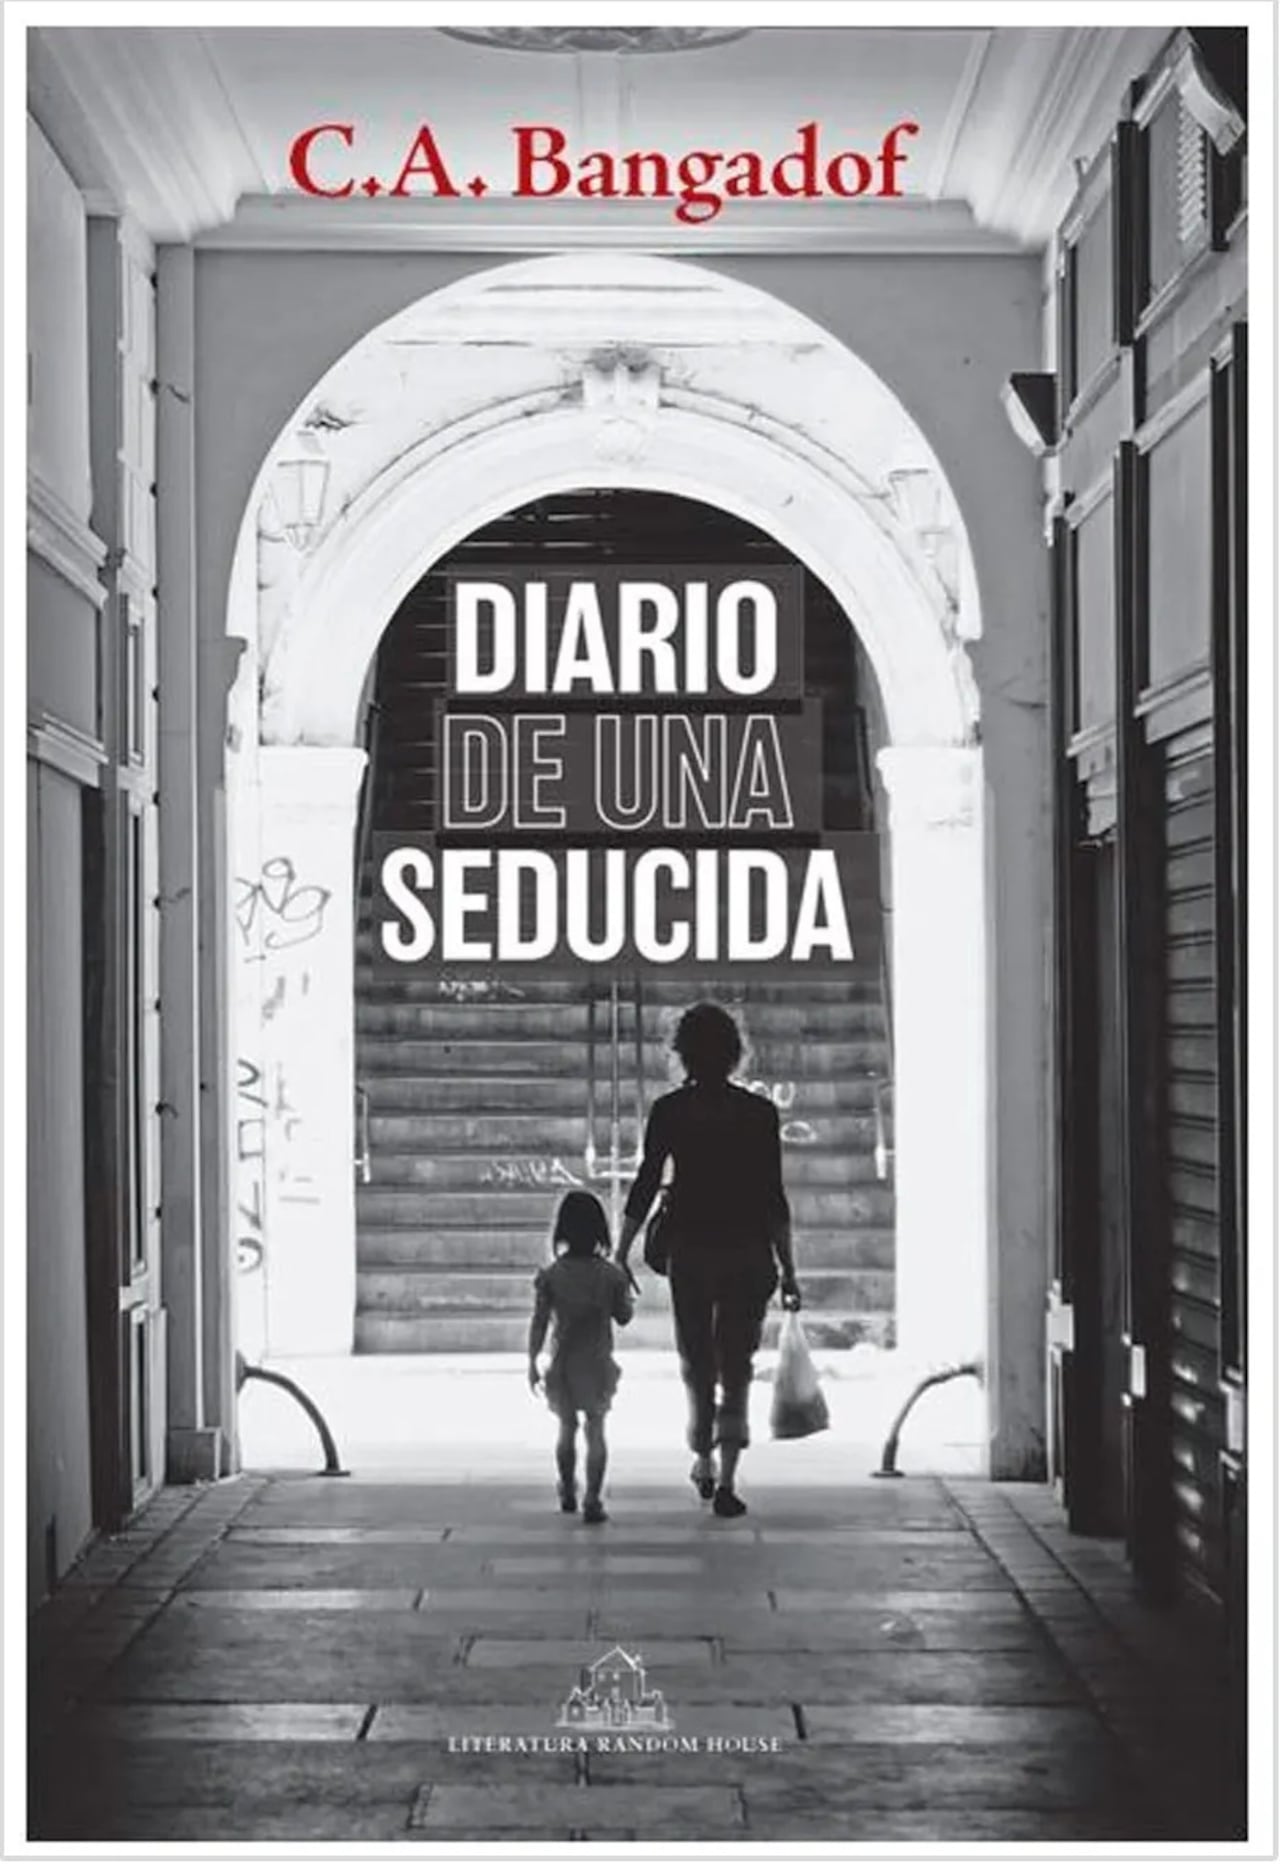 'Diario de una seducida'.